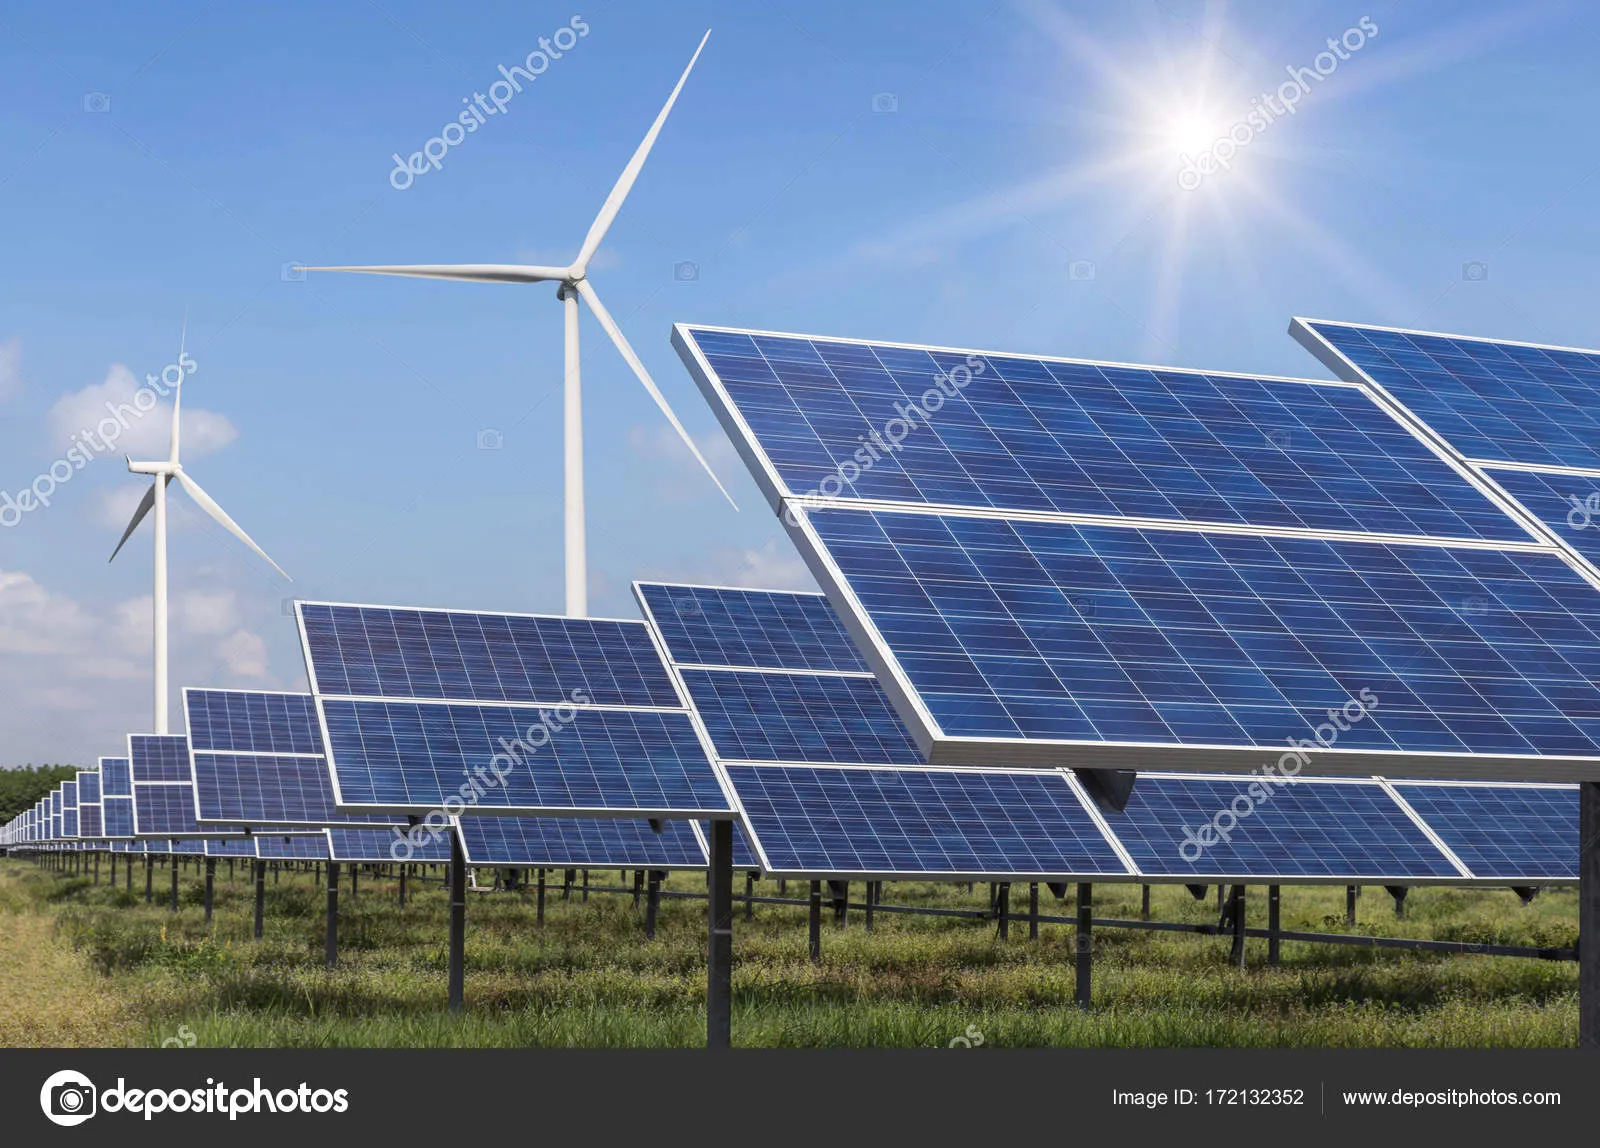 Металлоконструкции солнечных панелей, ветряных турбин#3